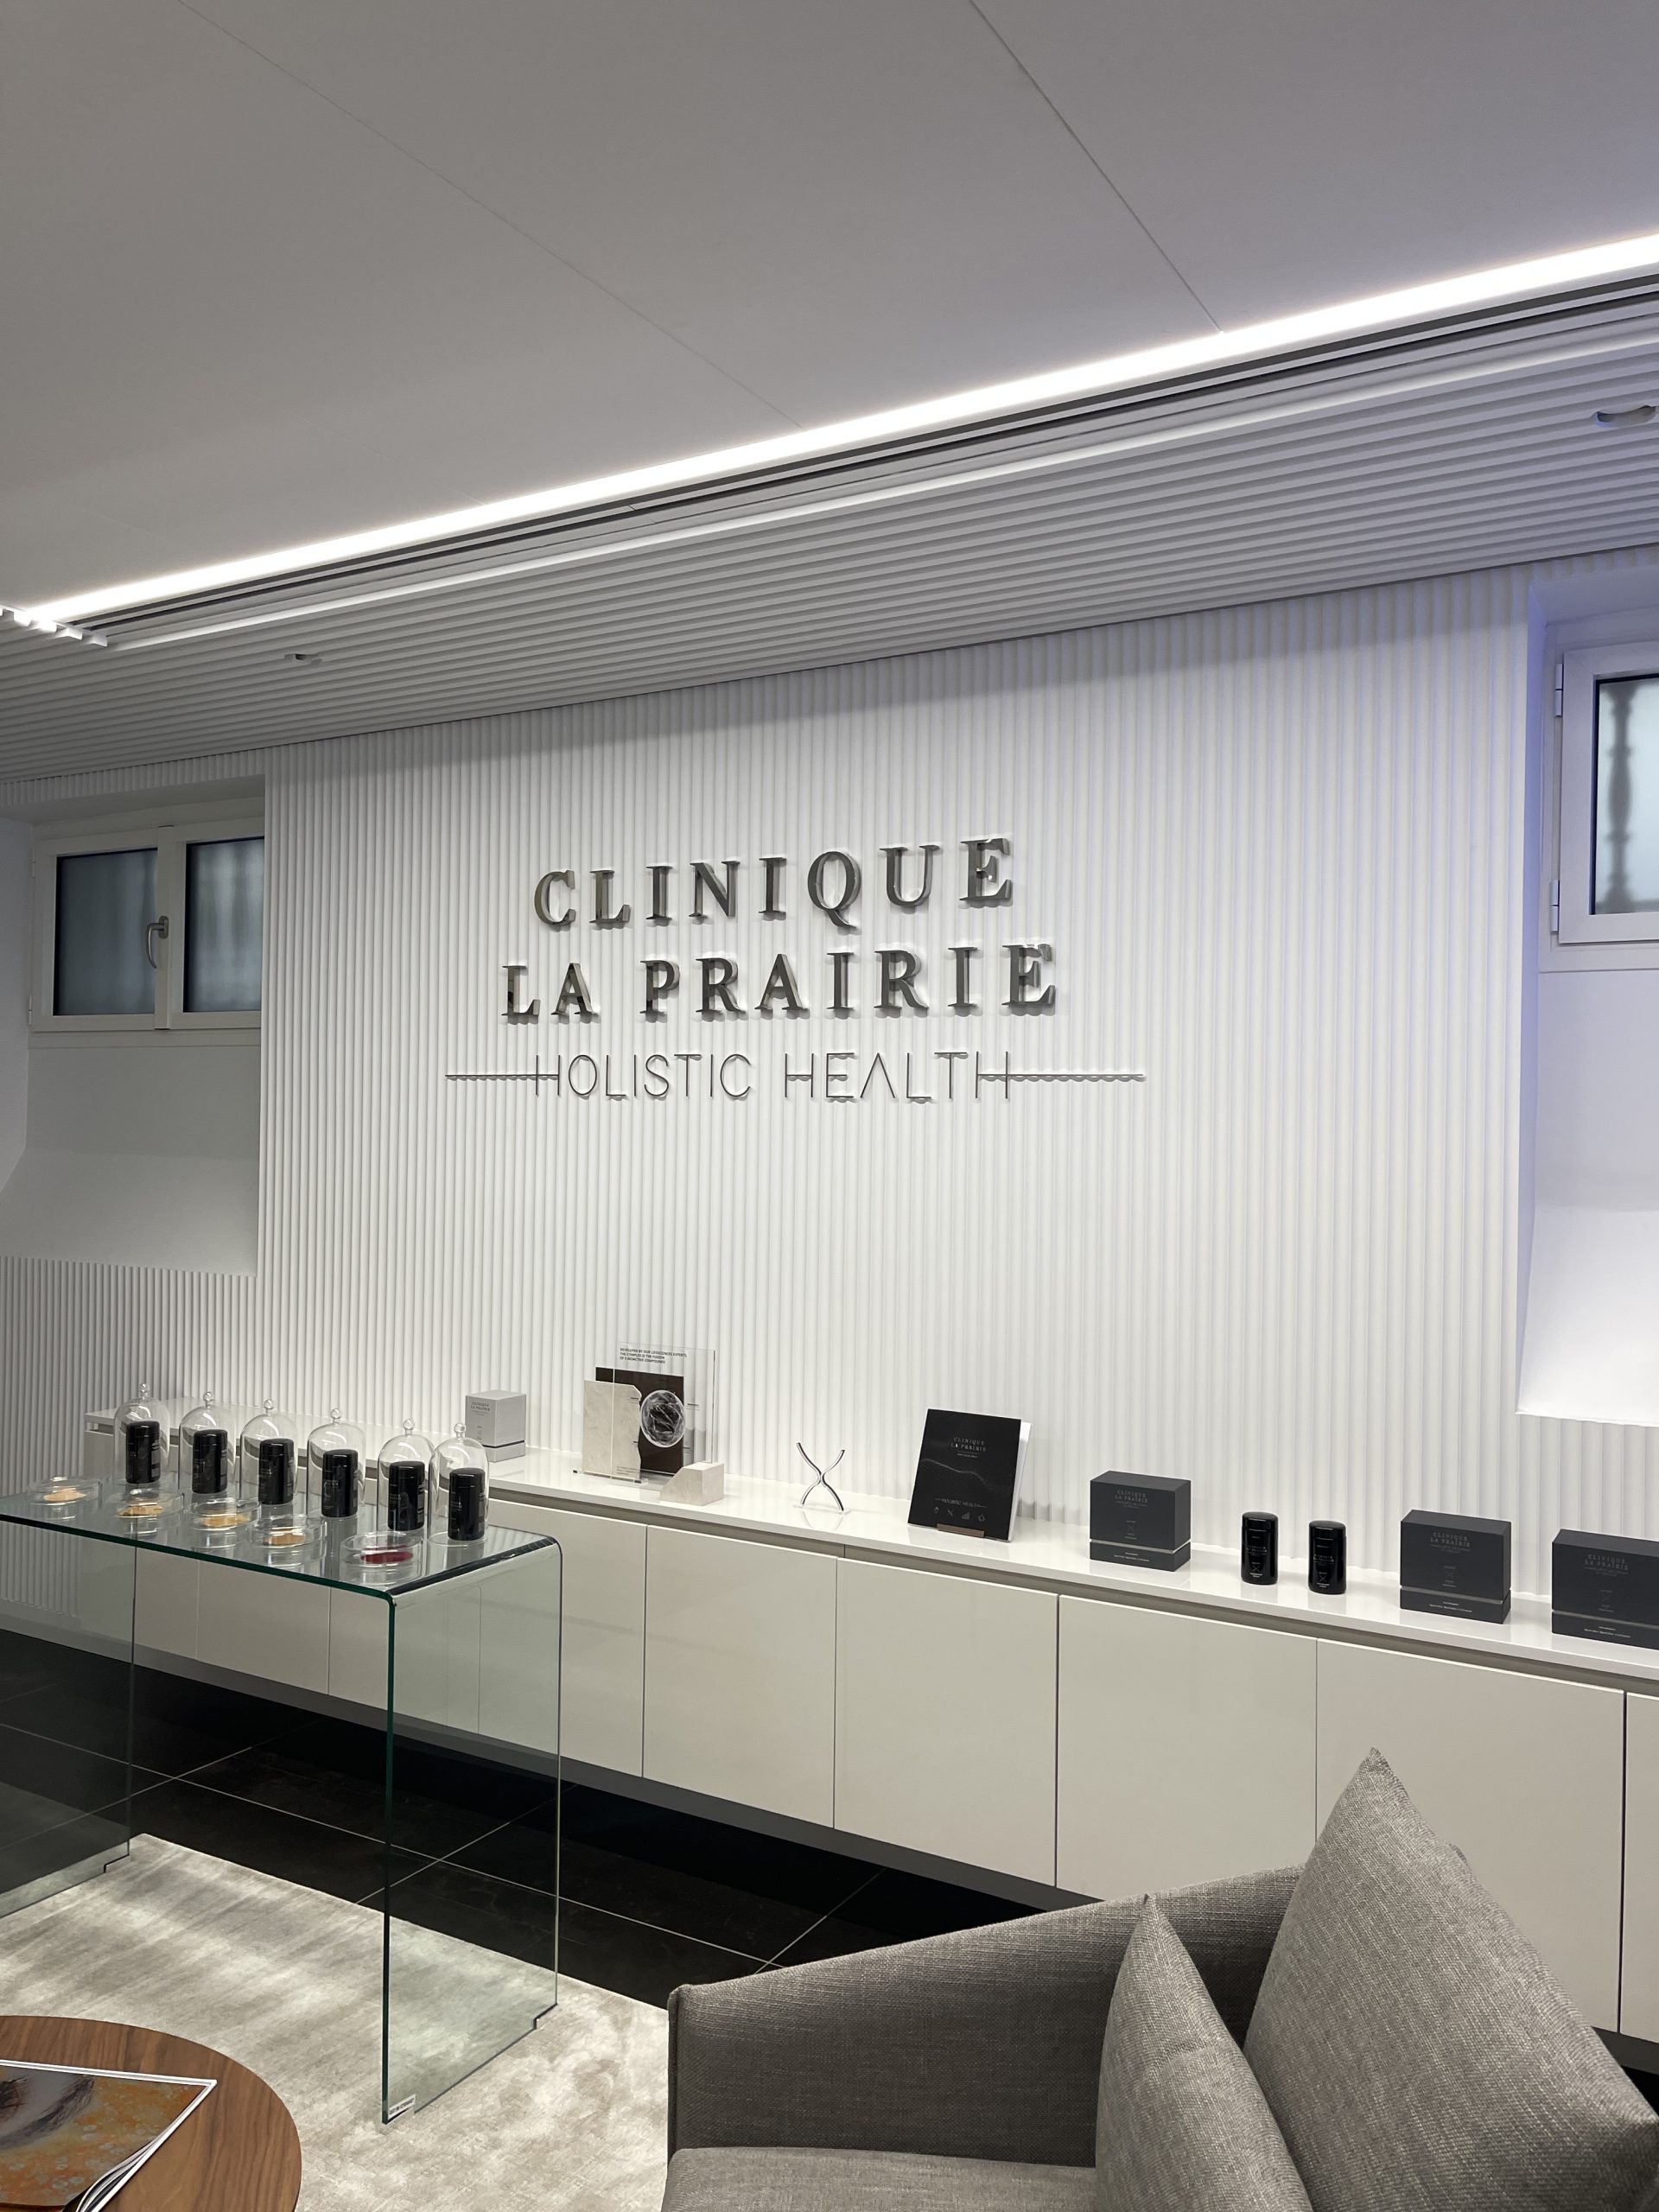  Clinique La Prairie